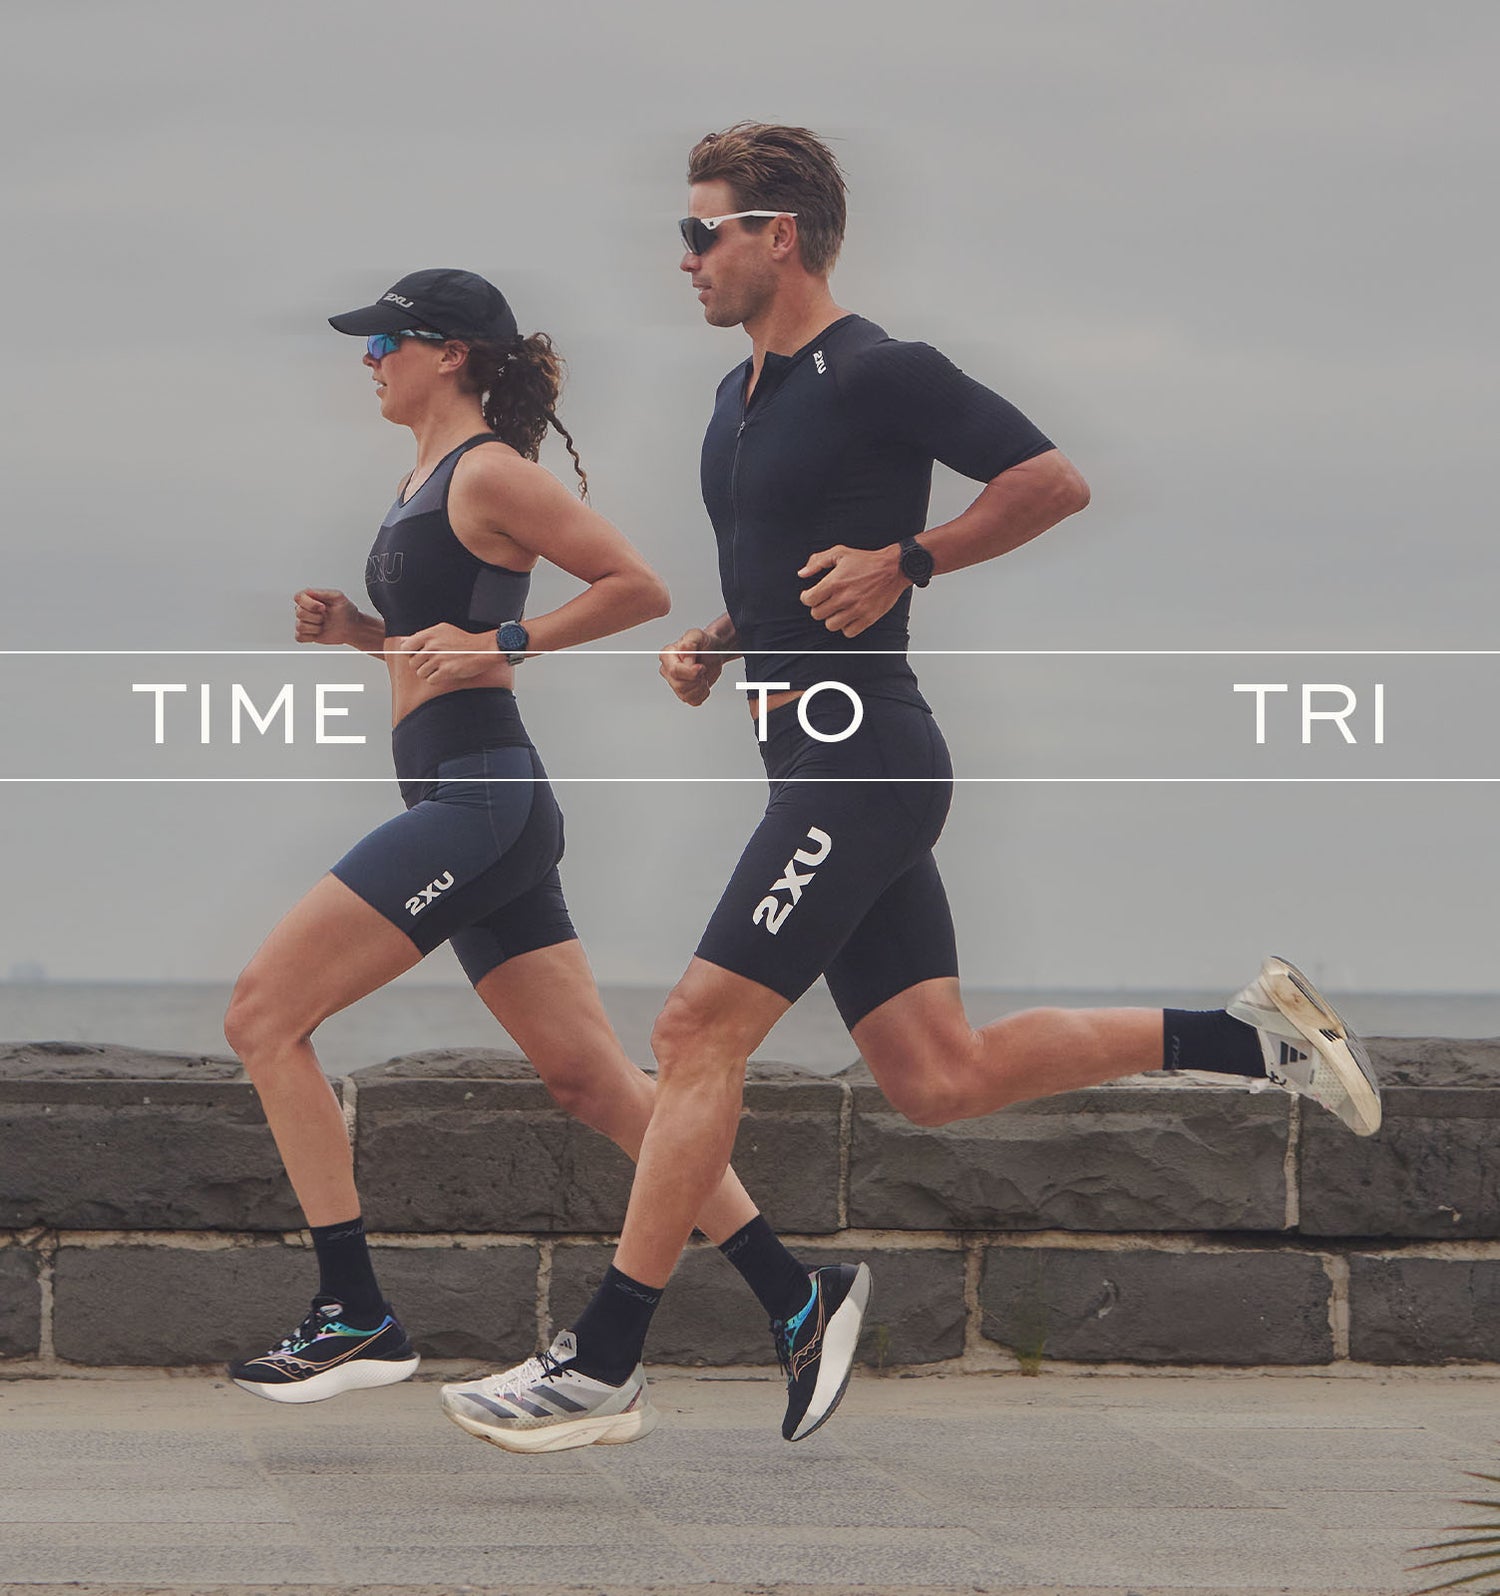 Compression Clothing for Gym, Running, Triathlon | 2XU US